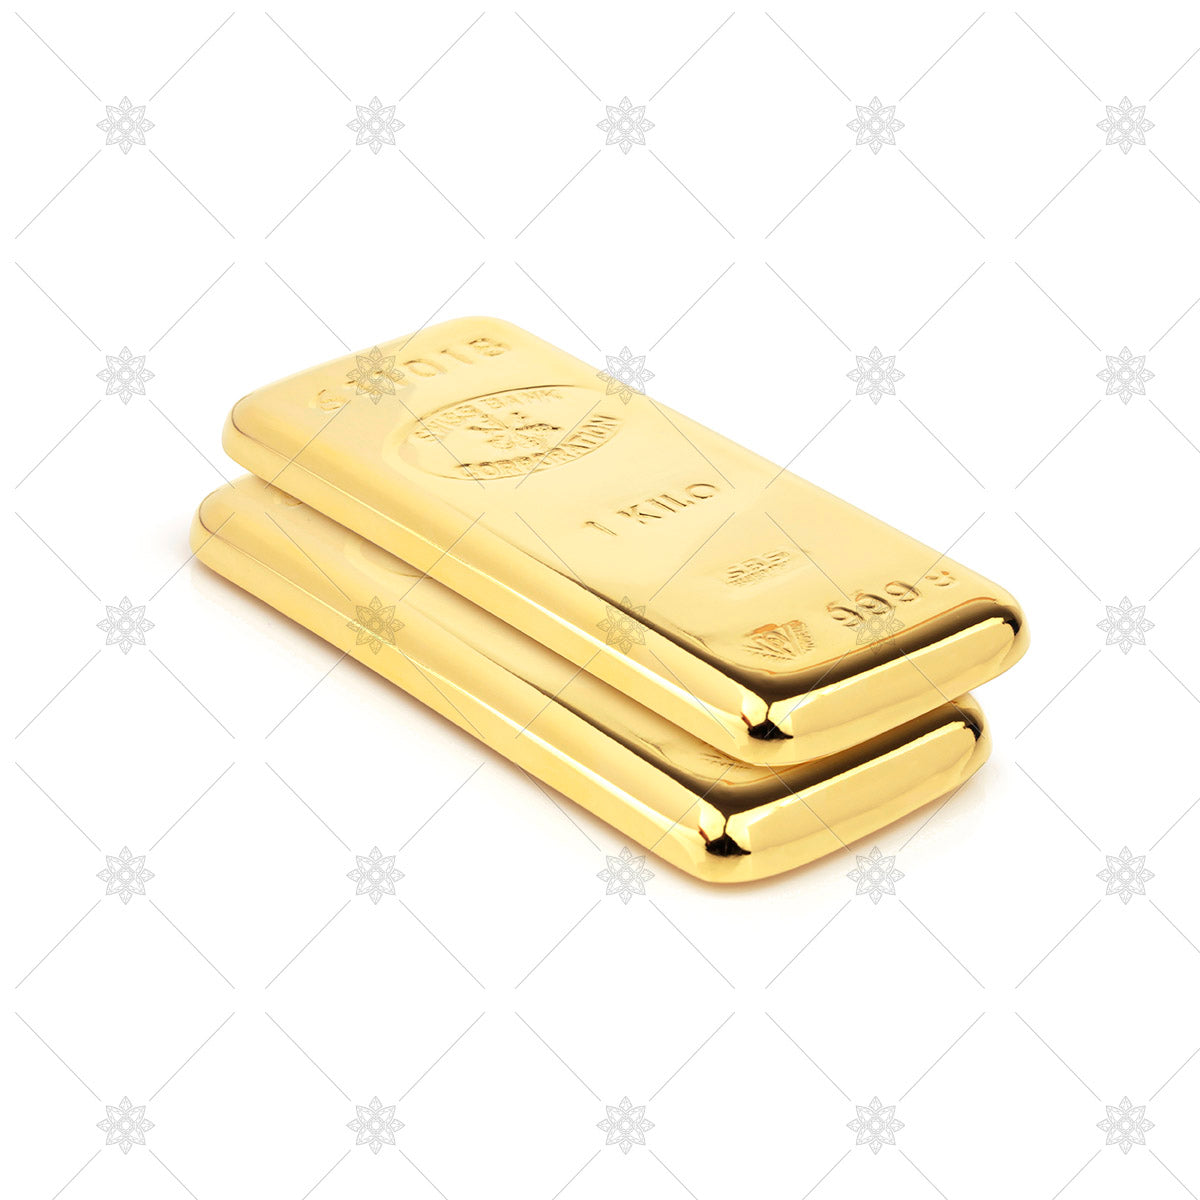 gold bullion bars image 1kg bar weights